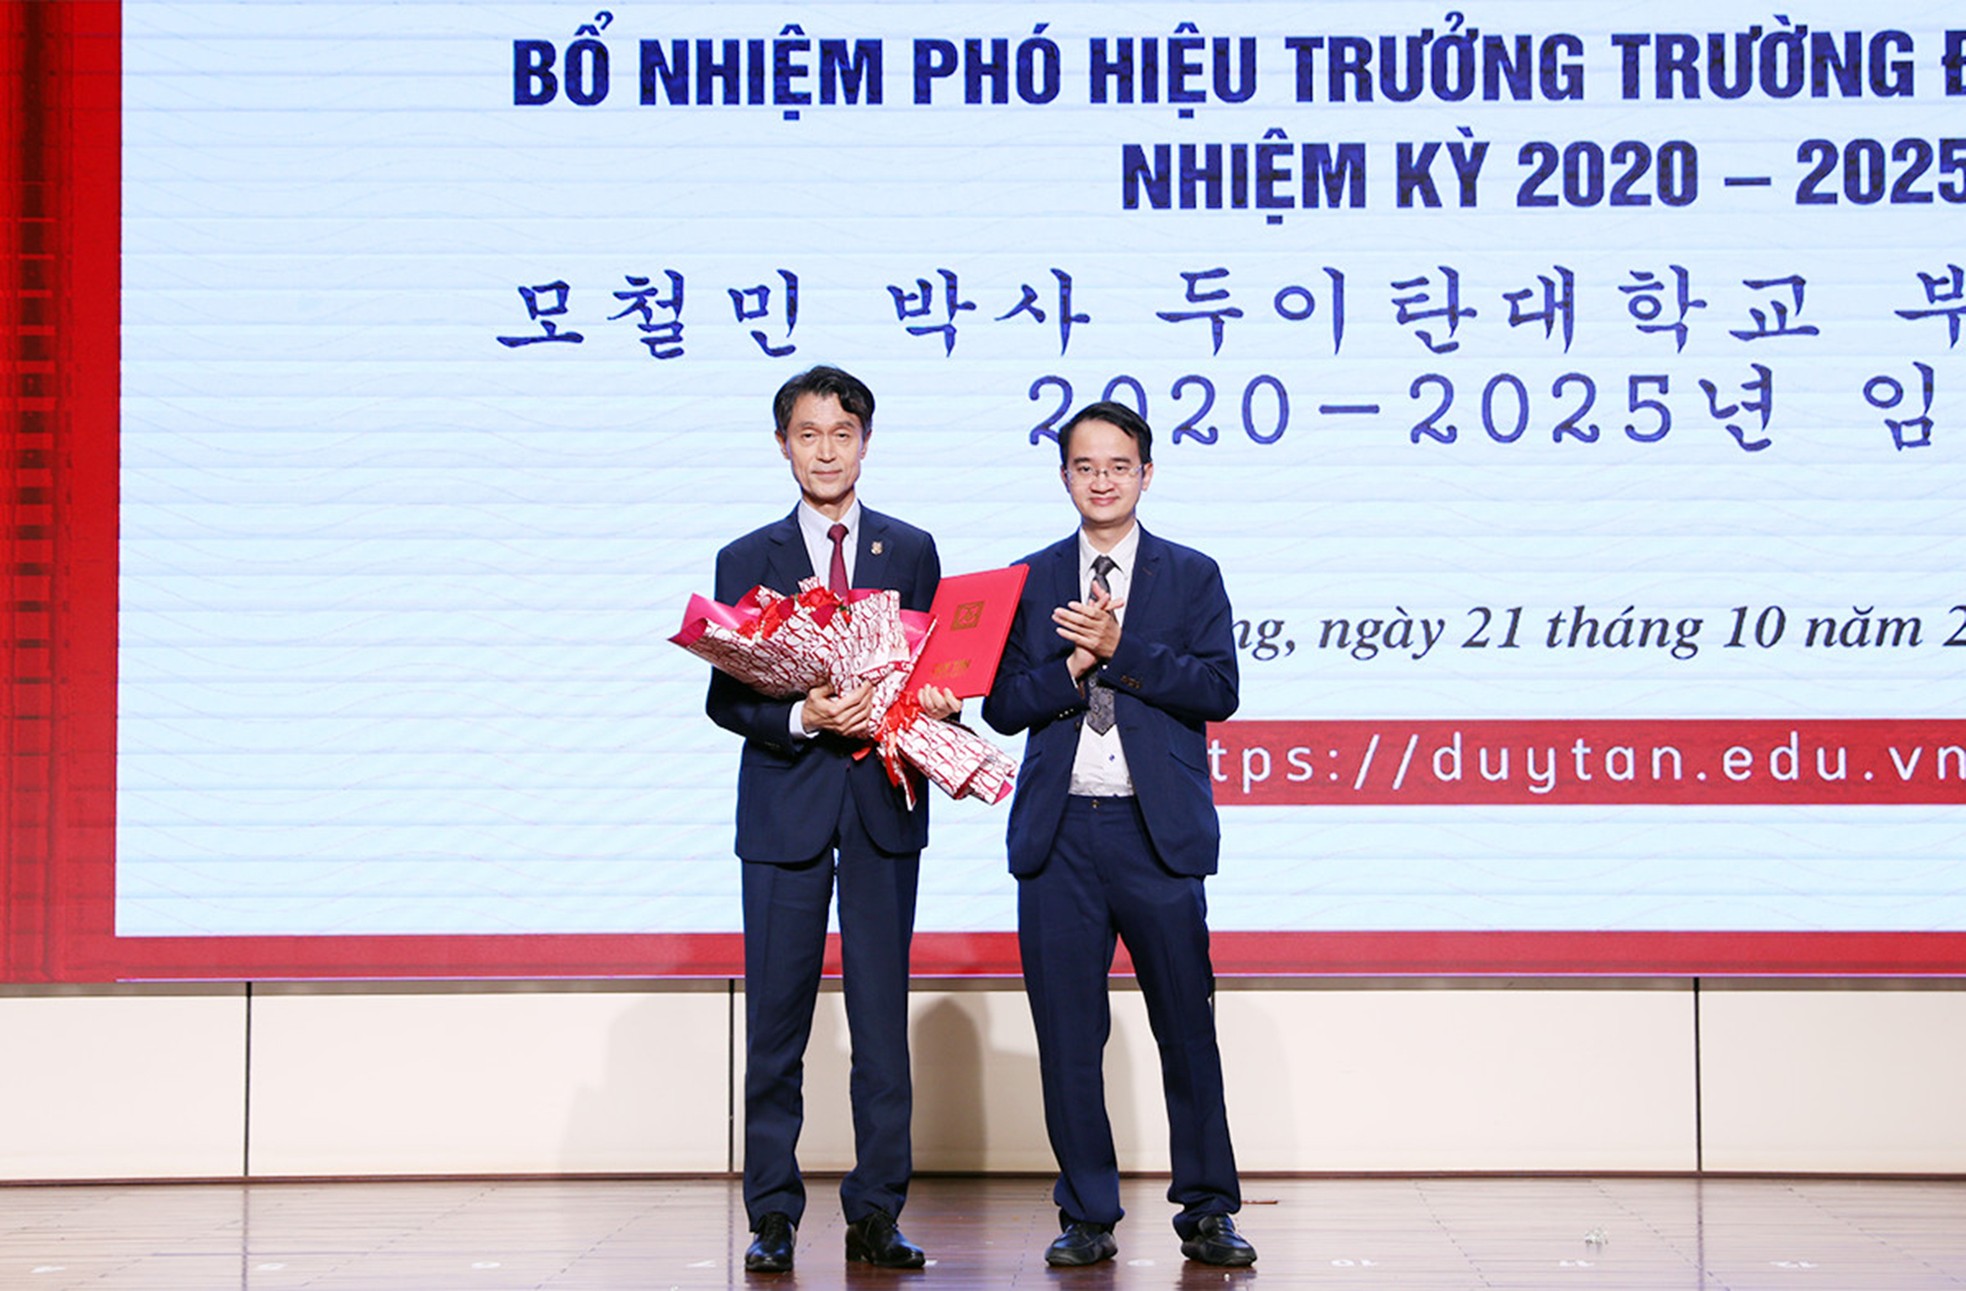 Đại học Duy Tân trao tặng Góc Học tập cho Học sinh Khó khăn tại trường THCS Nguyễn Hồng Ánh Anh-4-3451